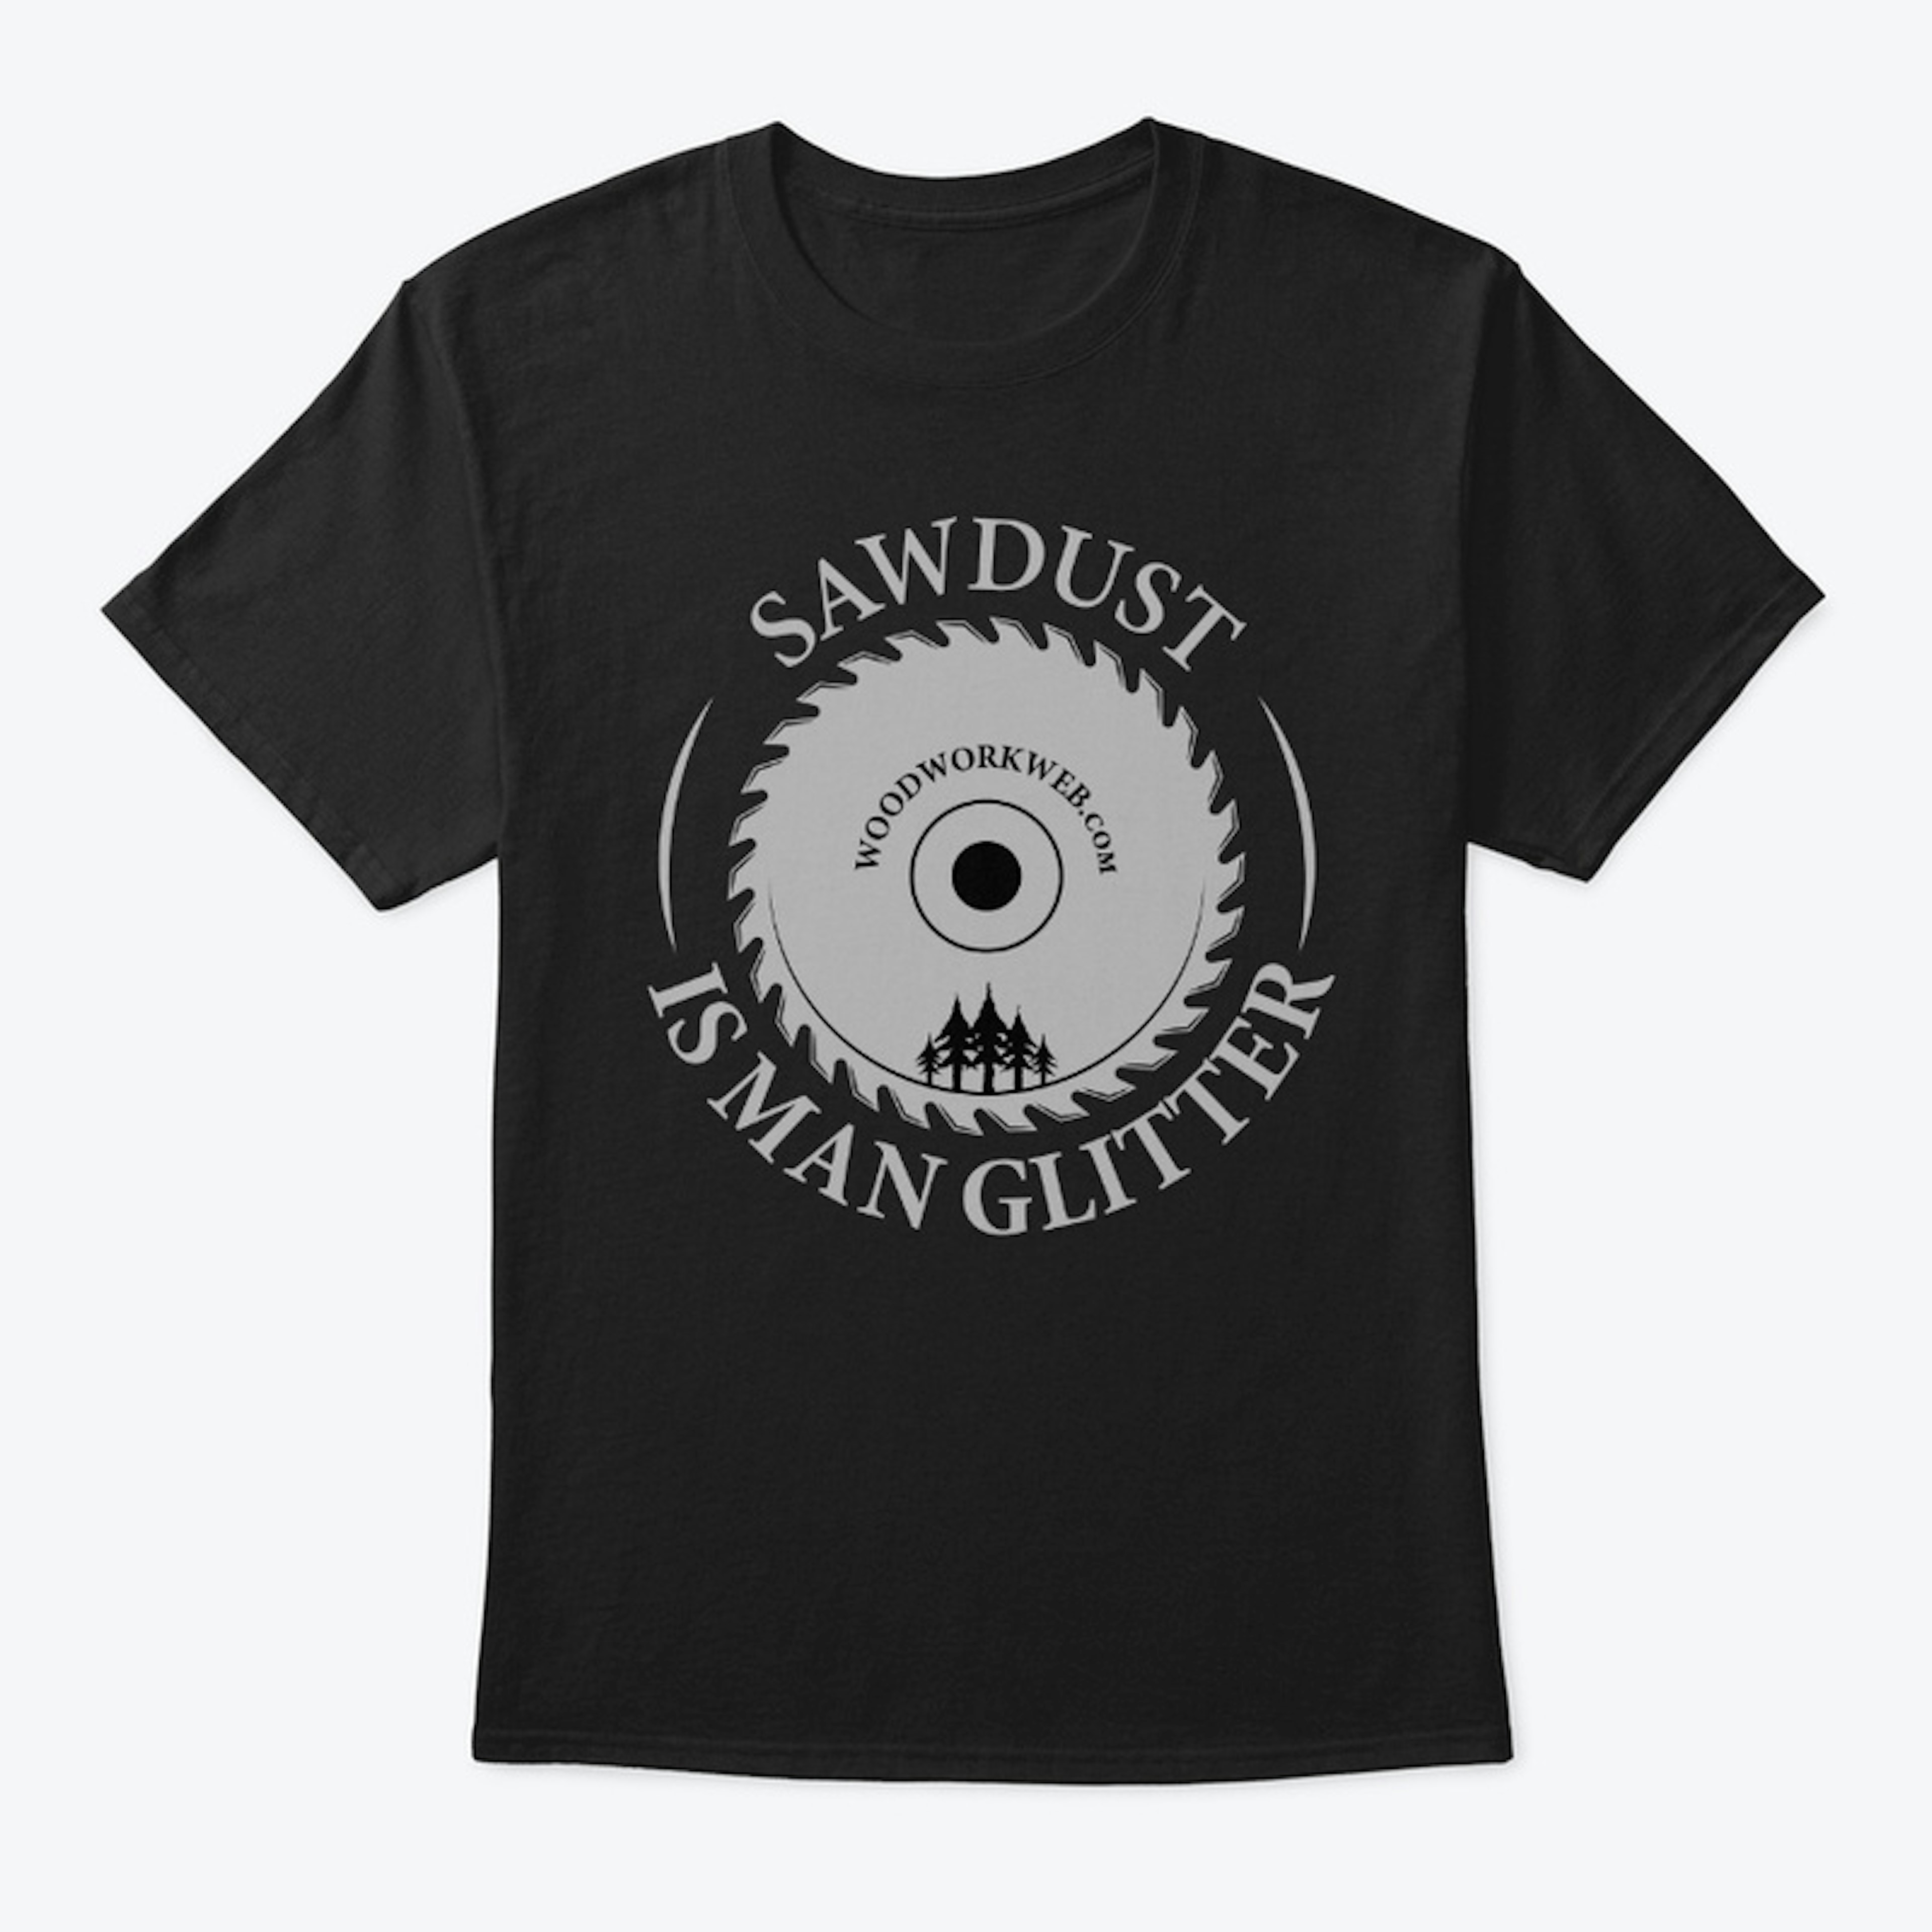 Sawdust Is Man Glitter: T-shirt Light